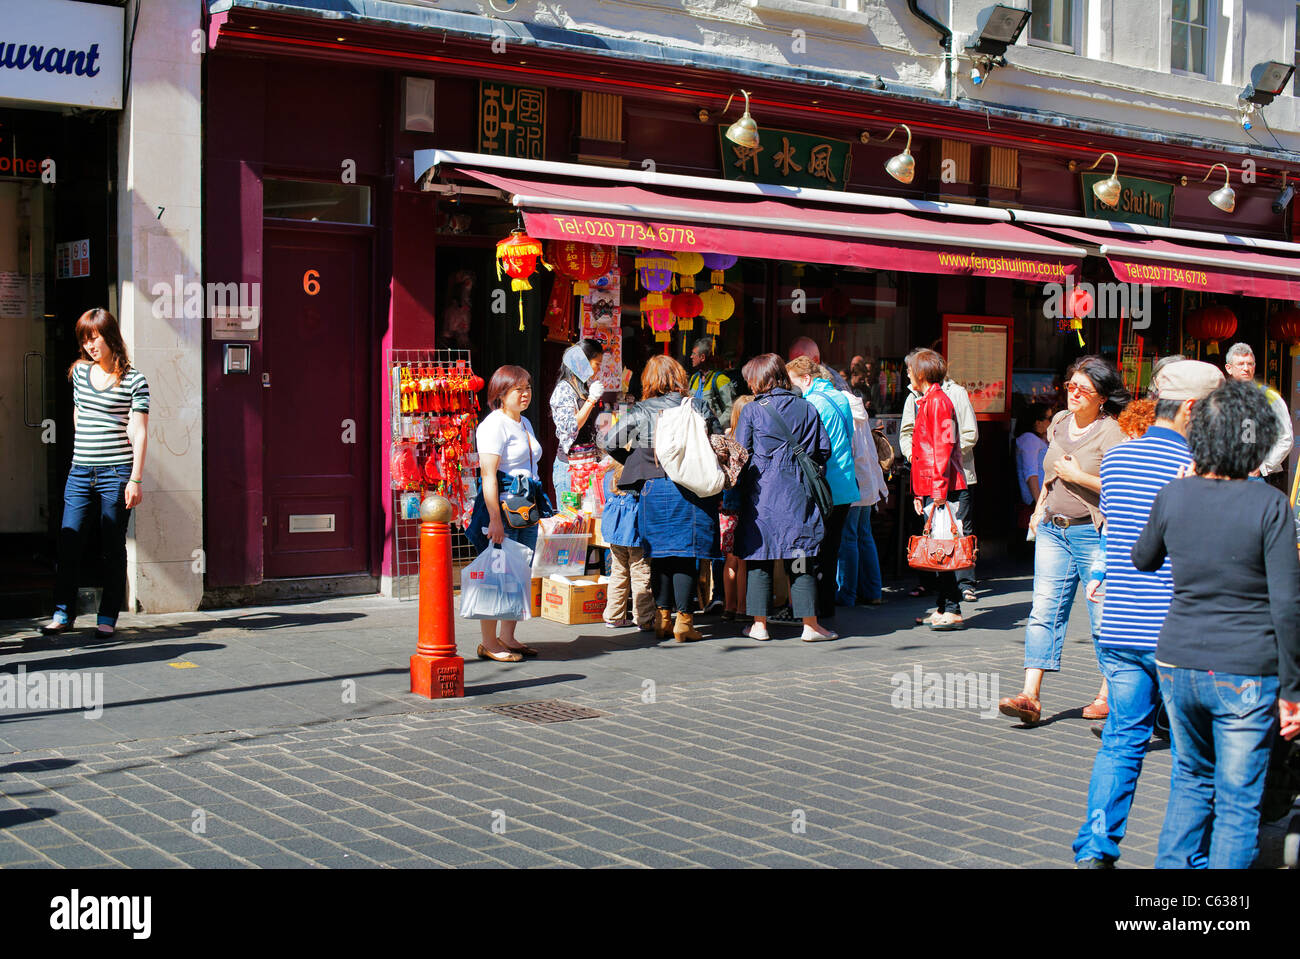 Scène de rue, chineurs foule à l'extérieur de l'atelier de décrochage, China Town, Londres, Royaume-Uni, Europe Banque D'Images